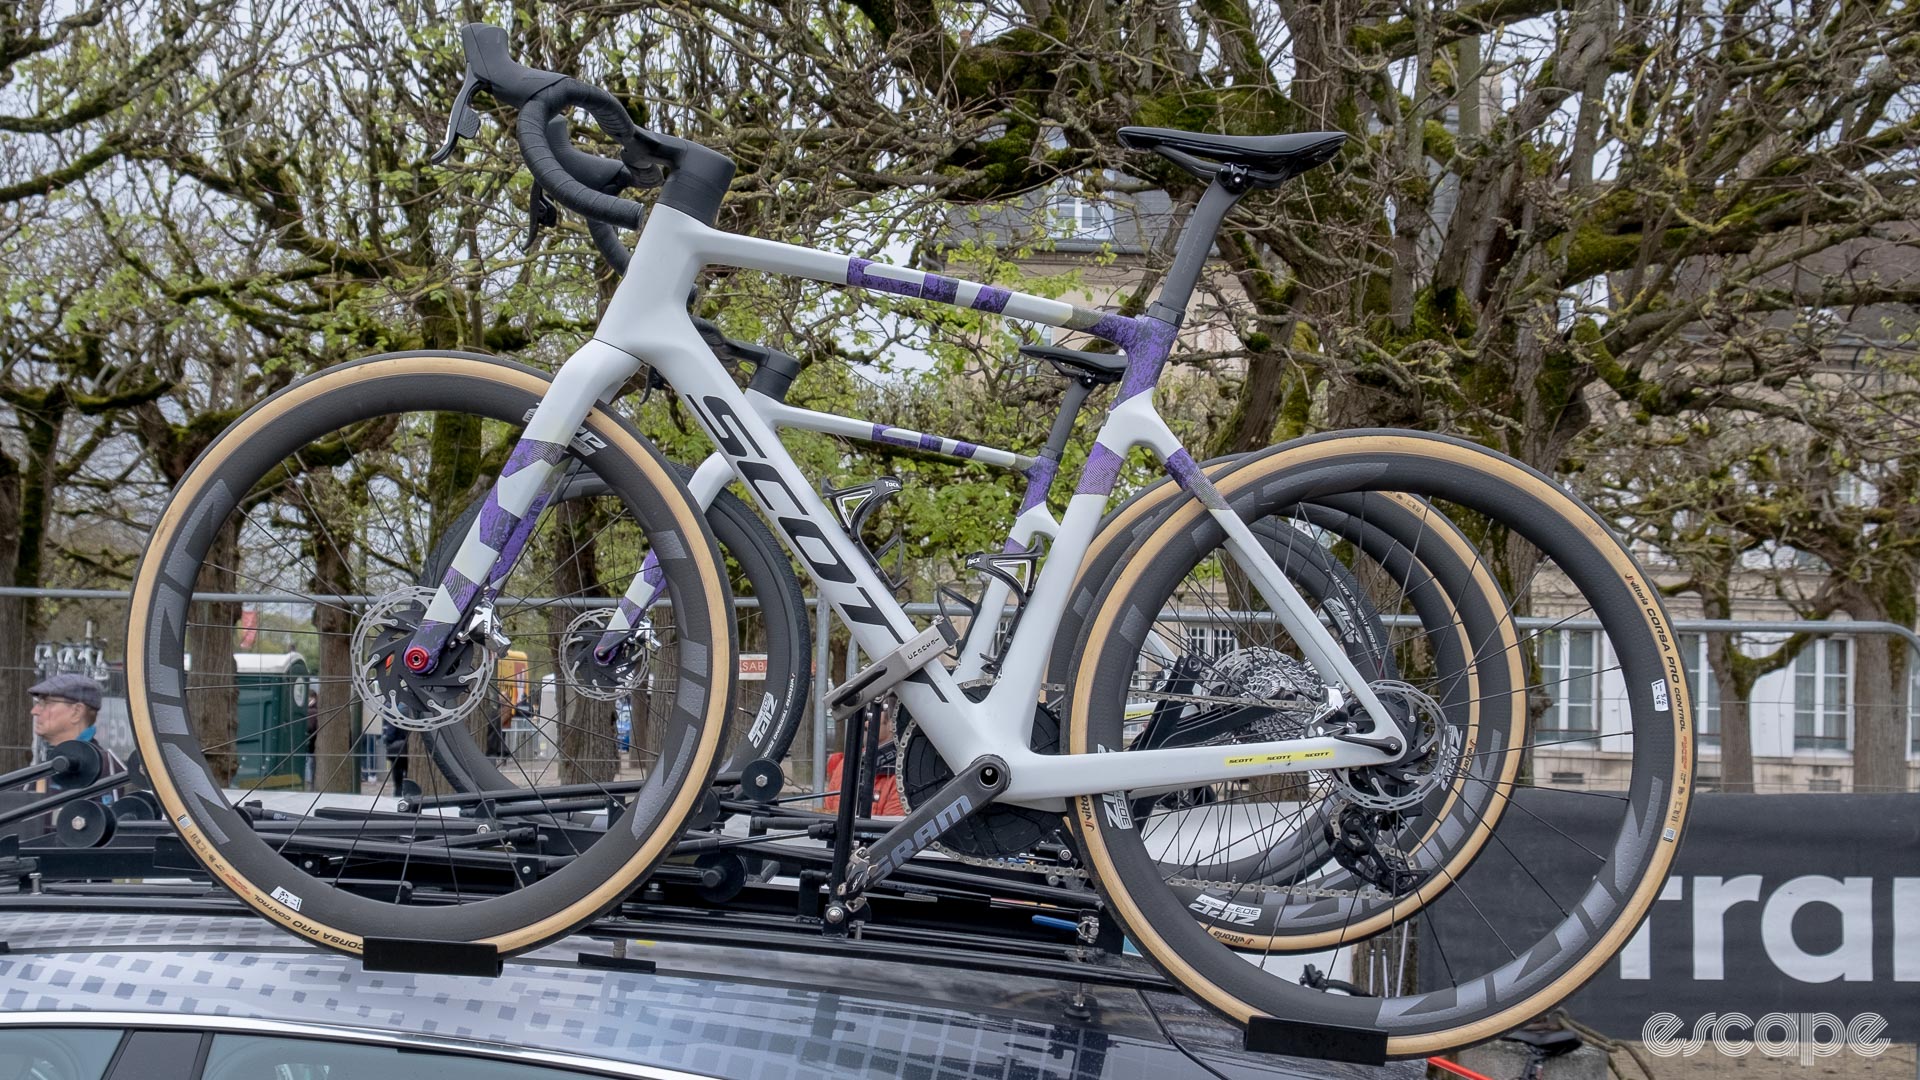 The image shows Scott gravel bikes.